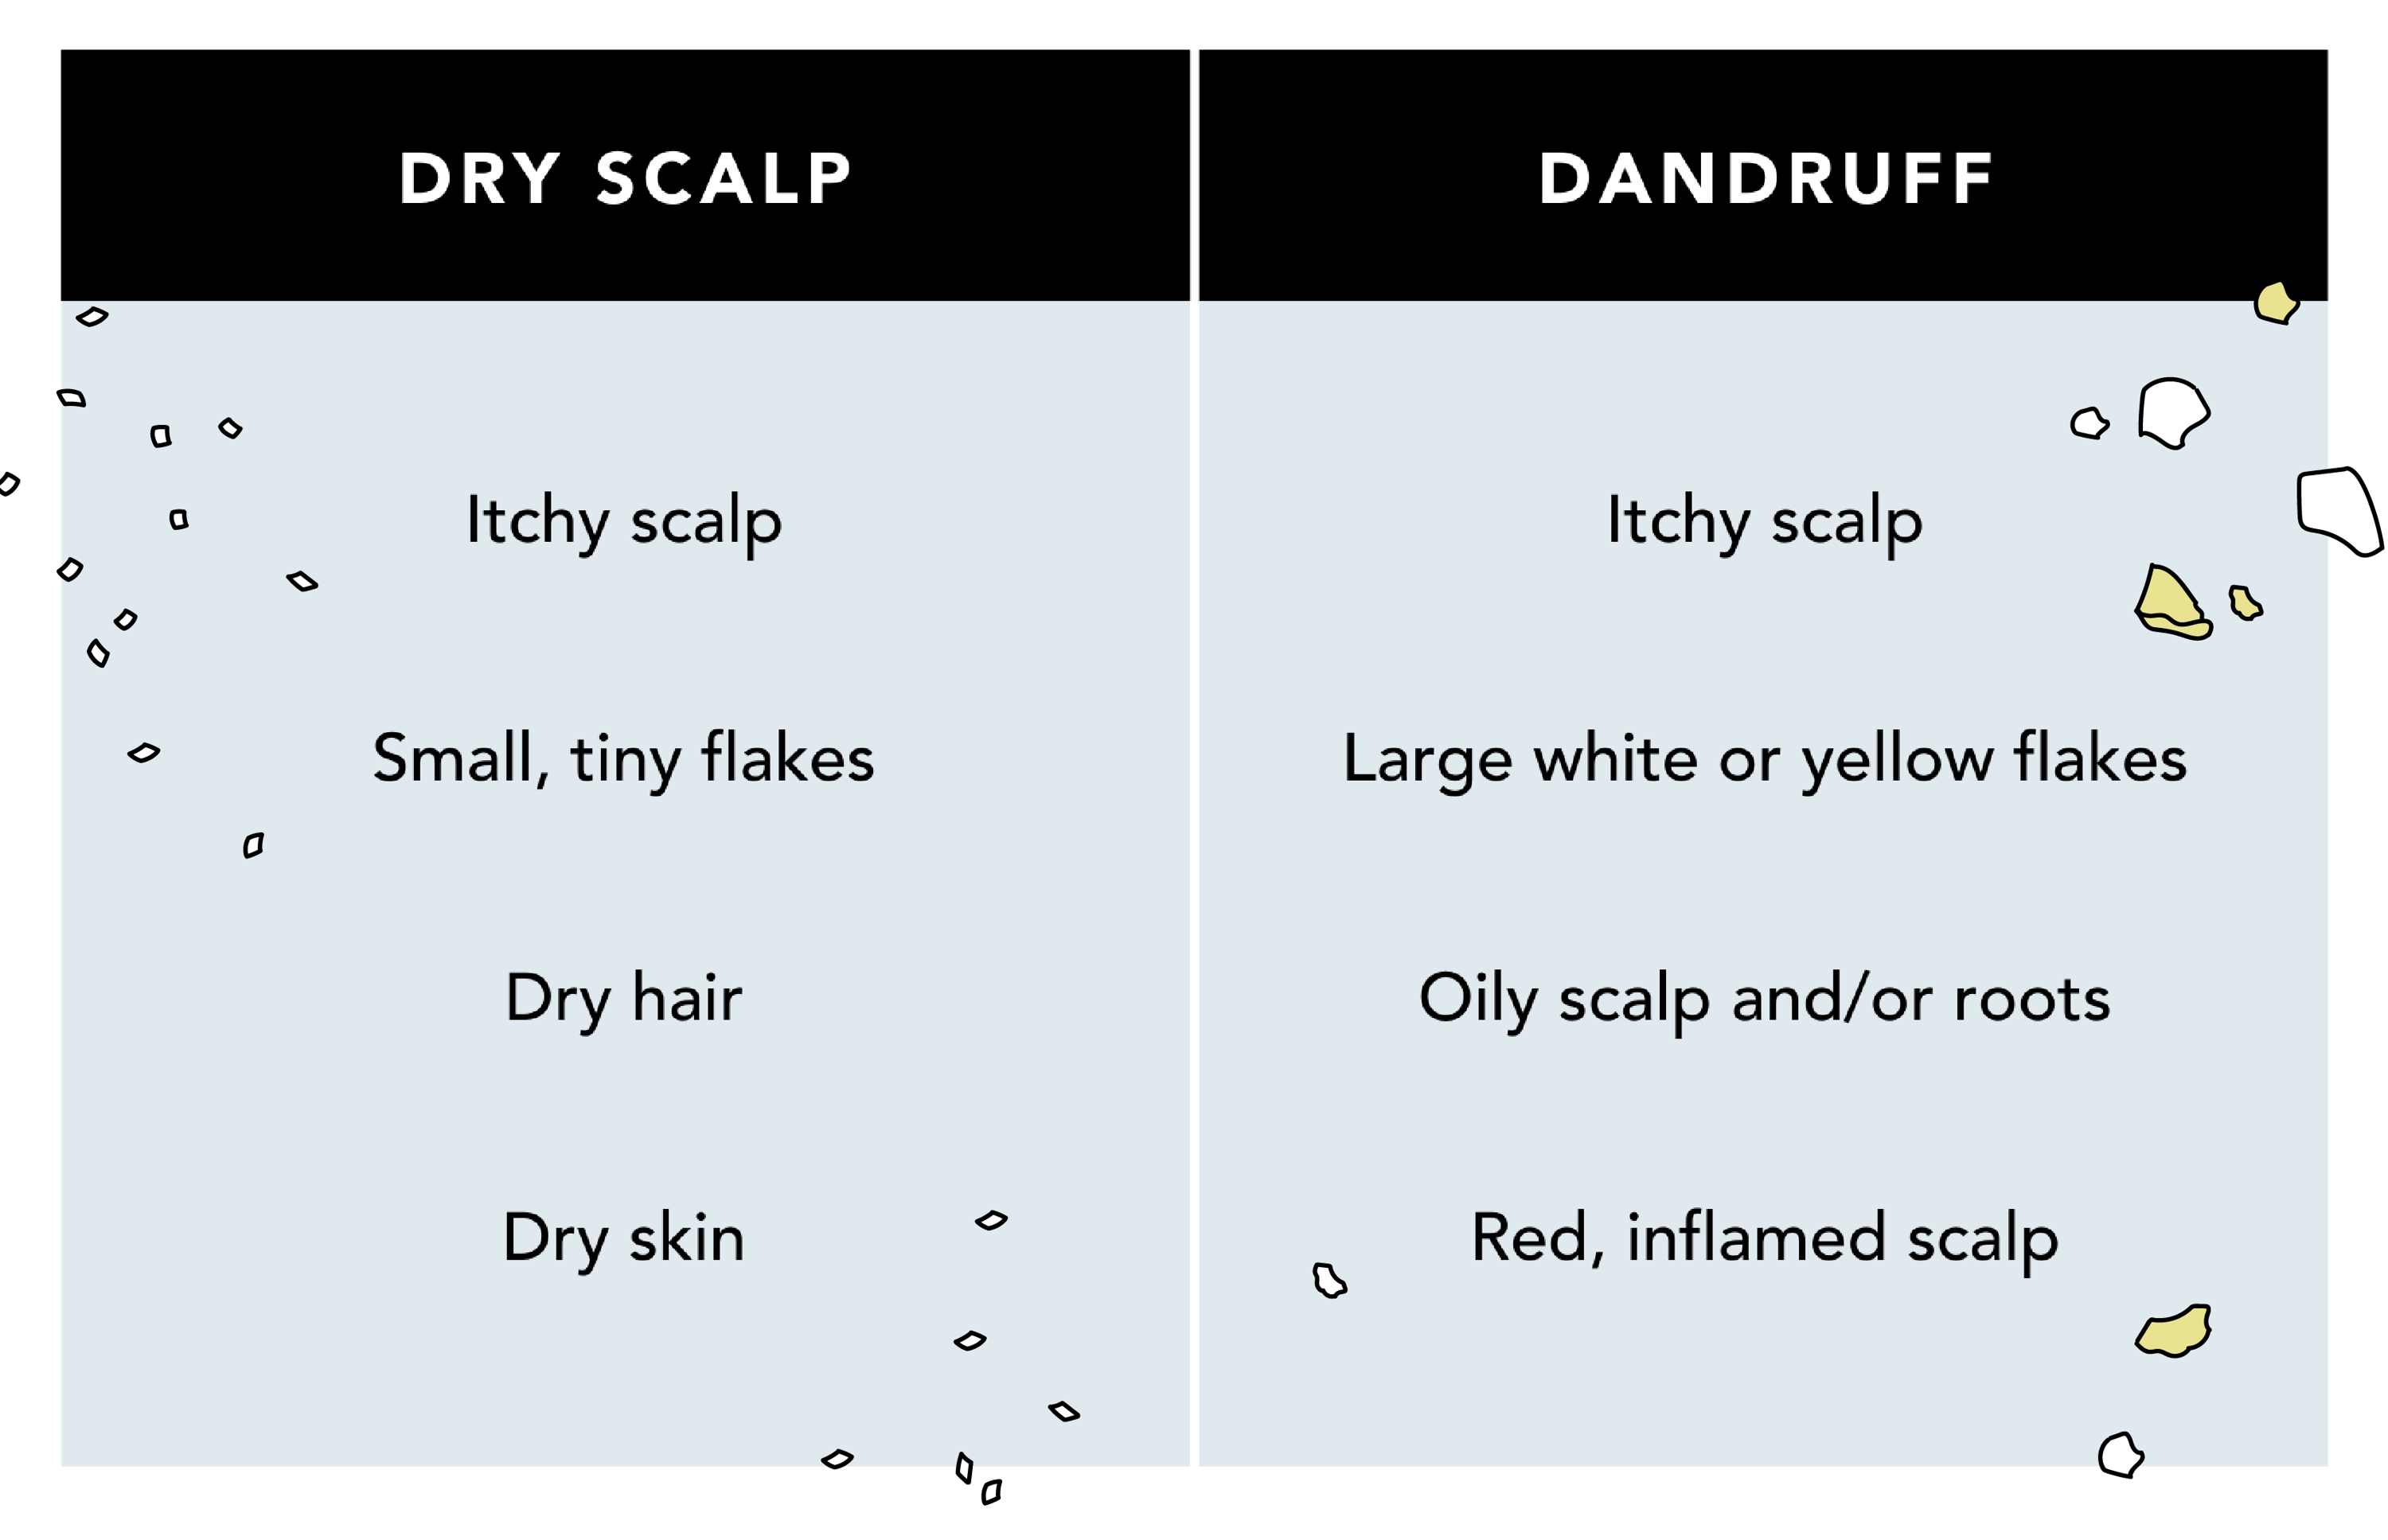 Dandruff vs Dry Scalp